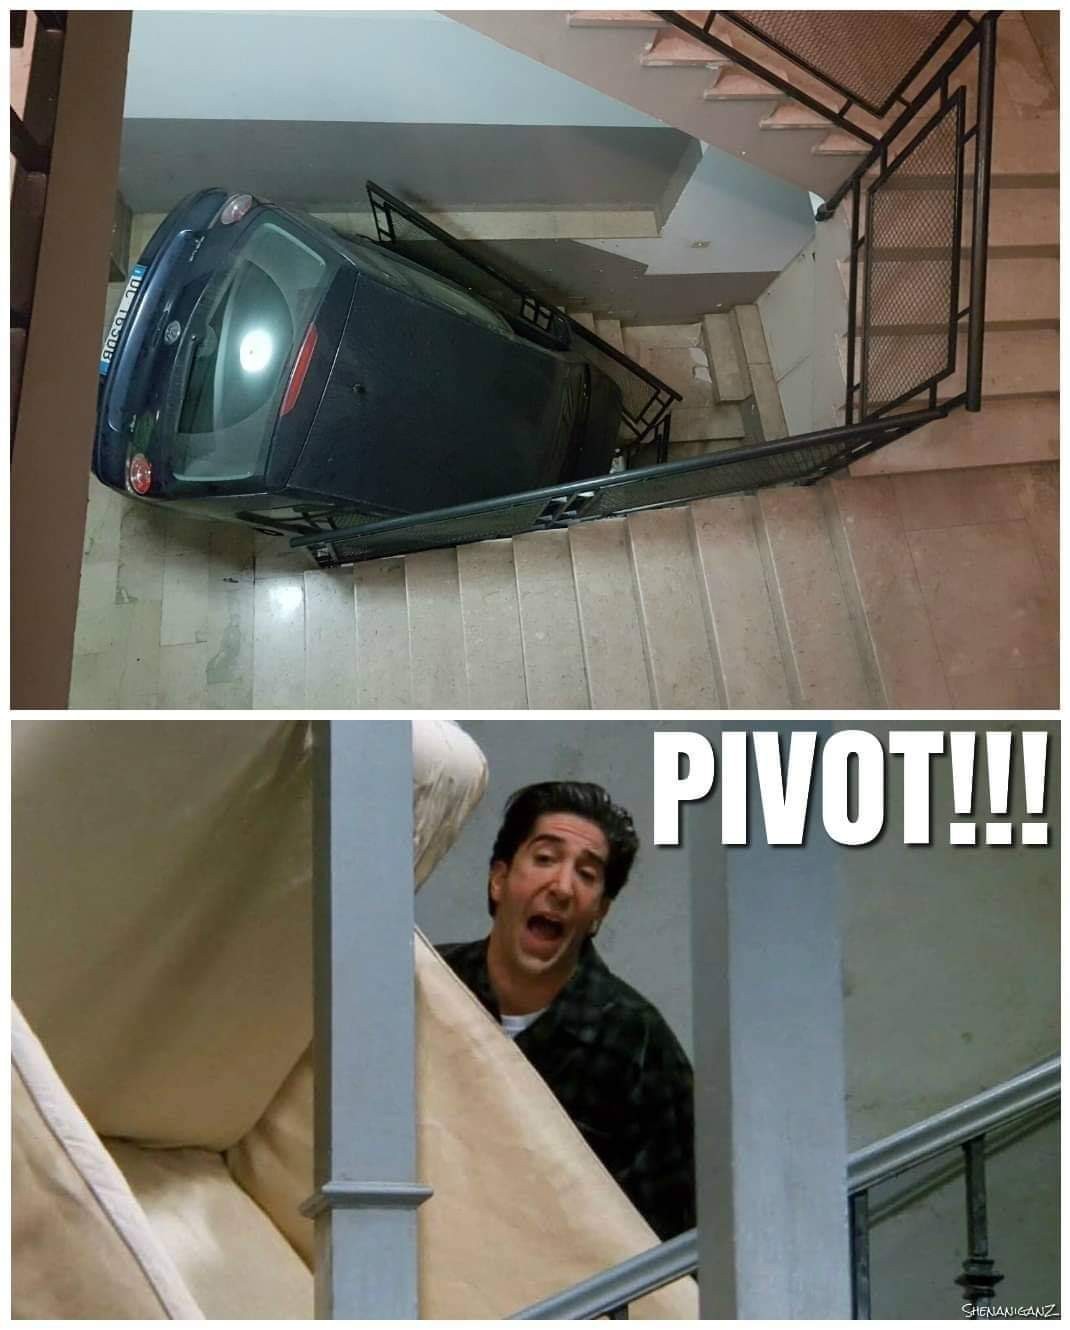 Pivot!!!! - meme